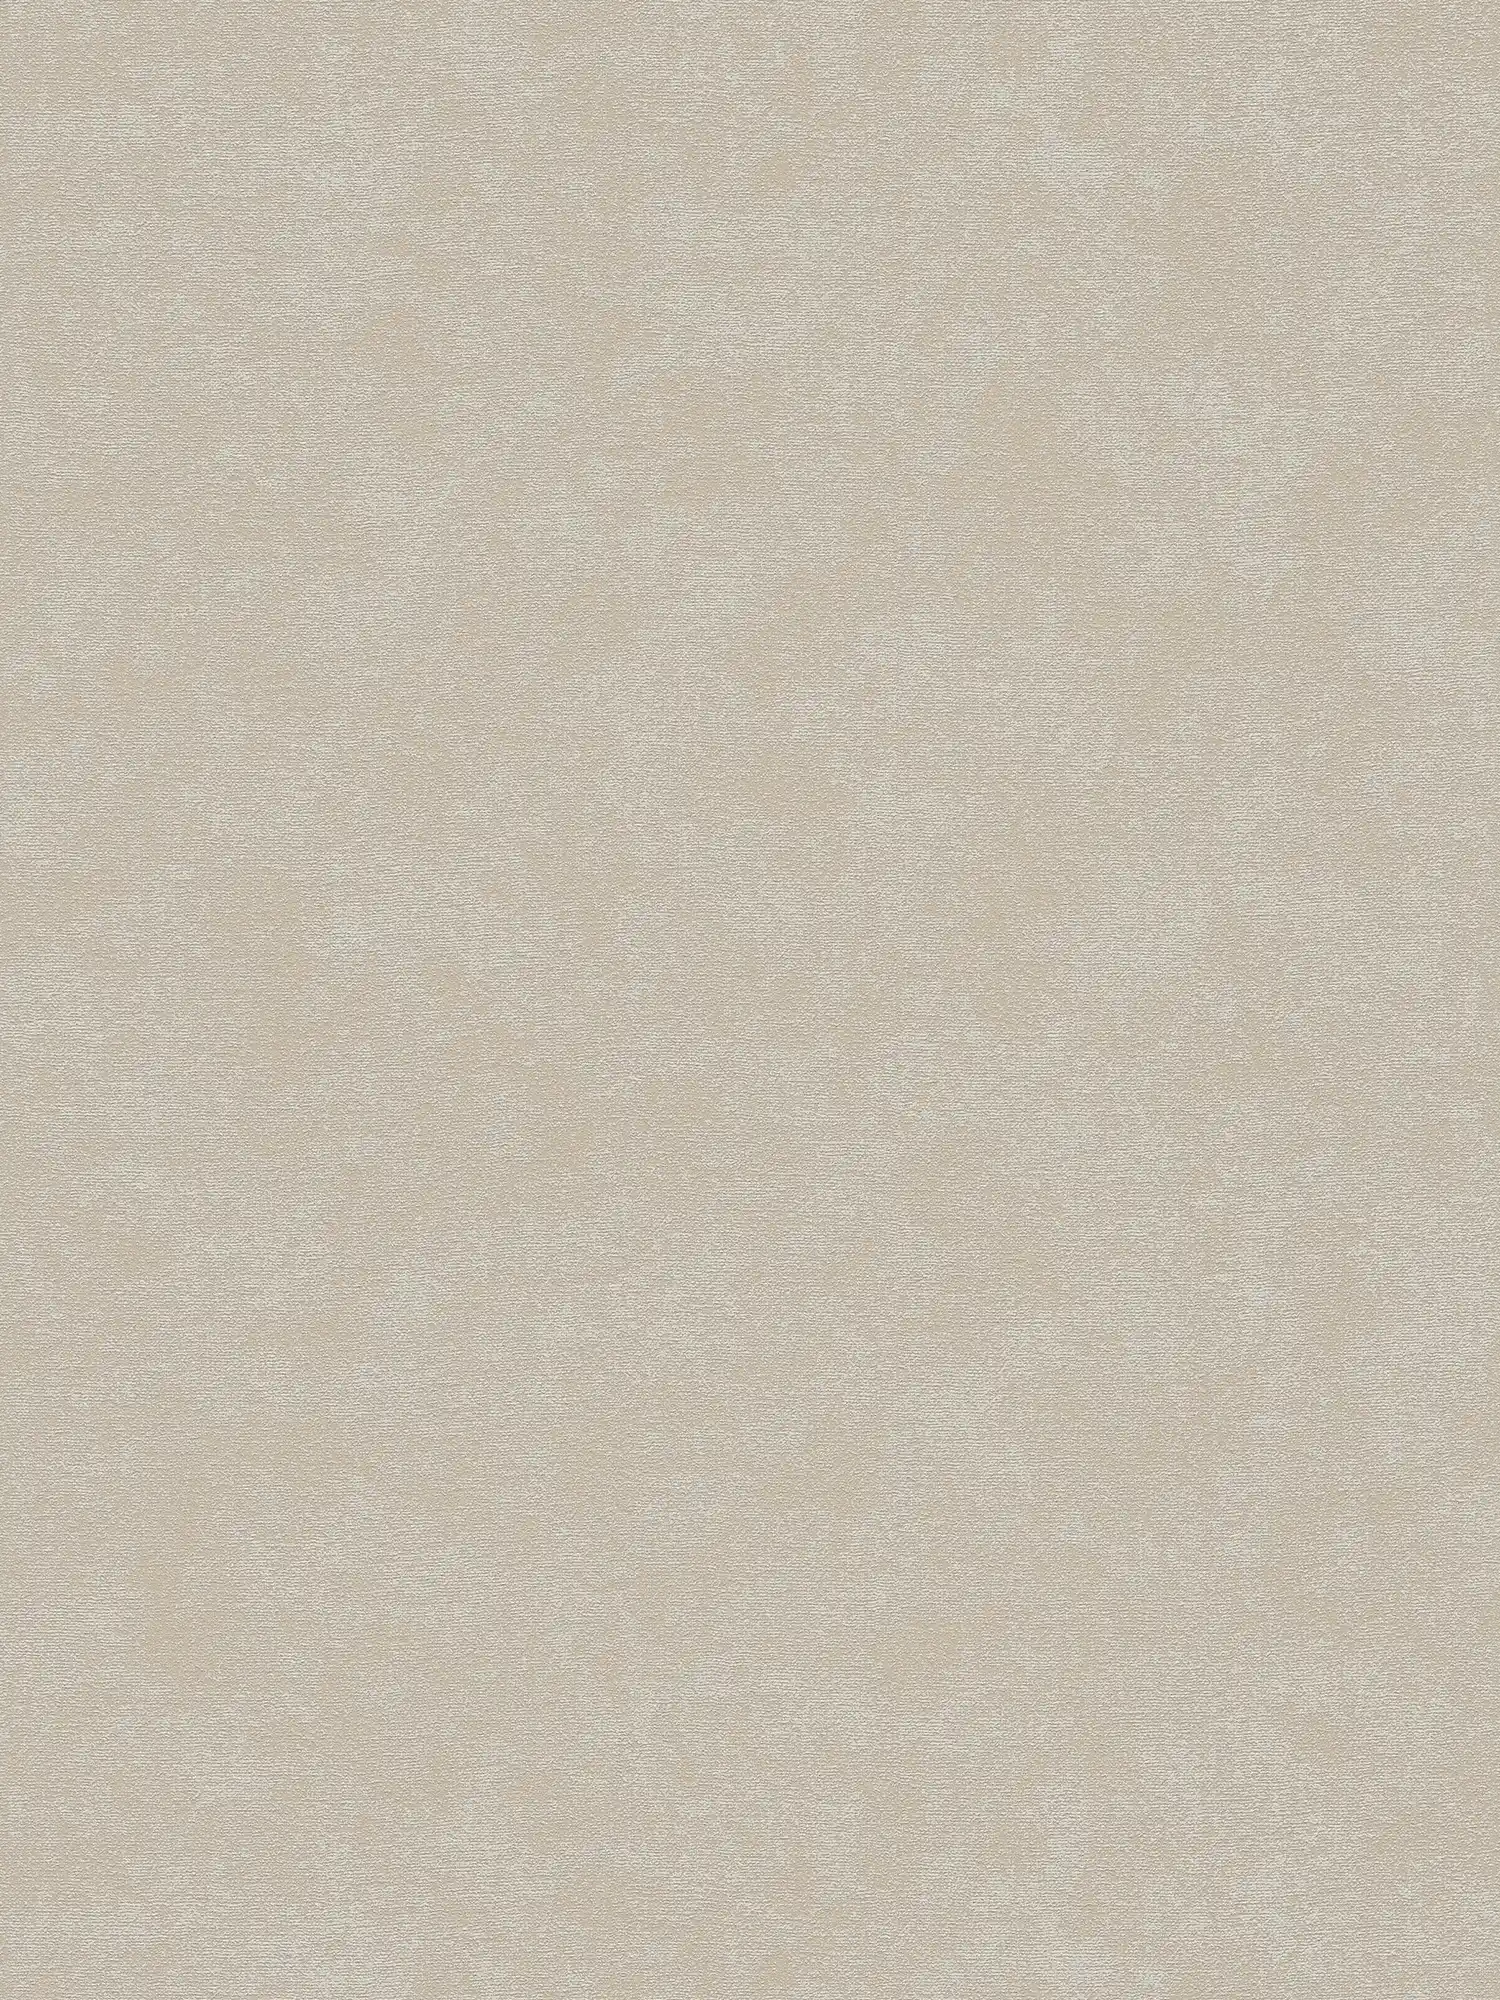 Effen vliesbehang met een lichte textuur - grijs, beige
